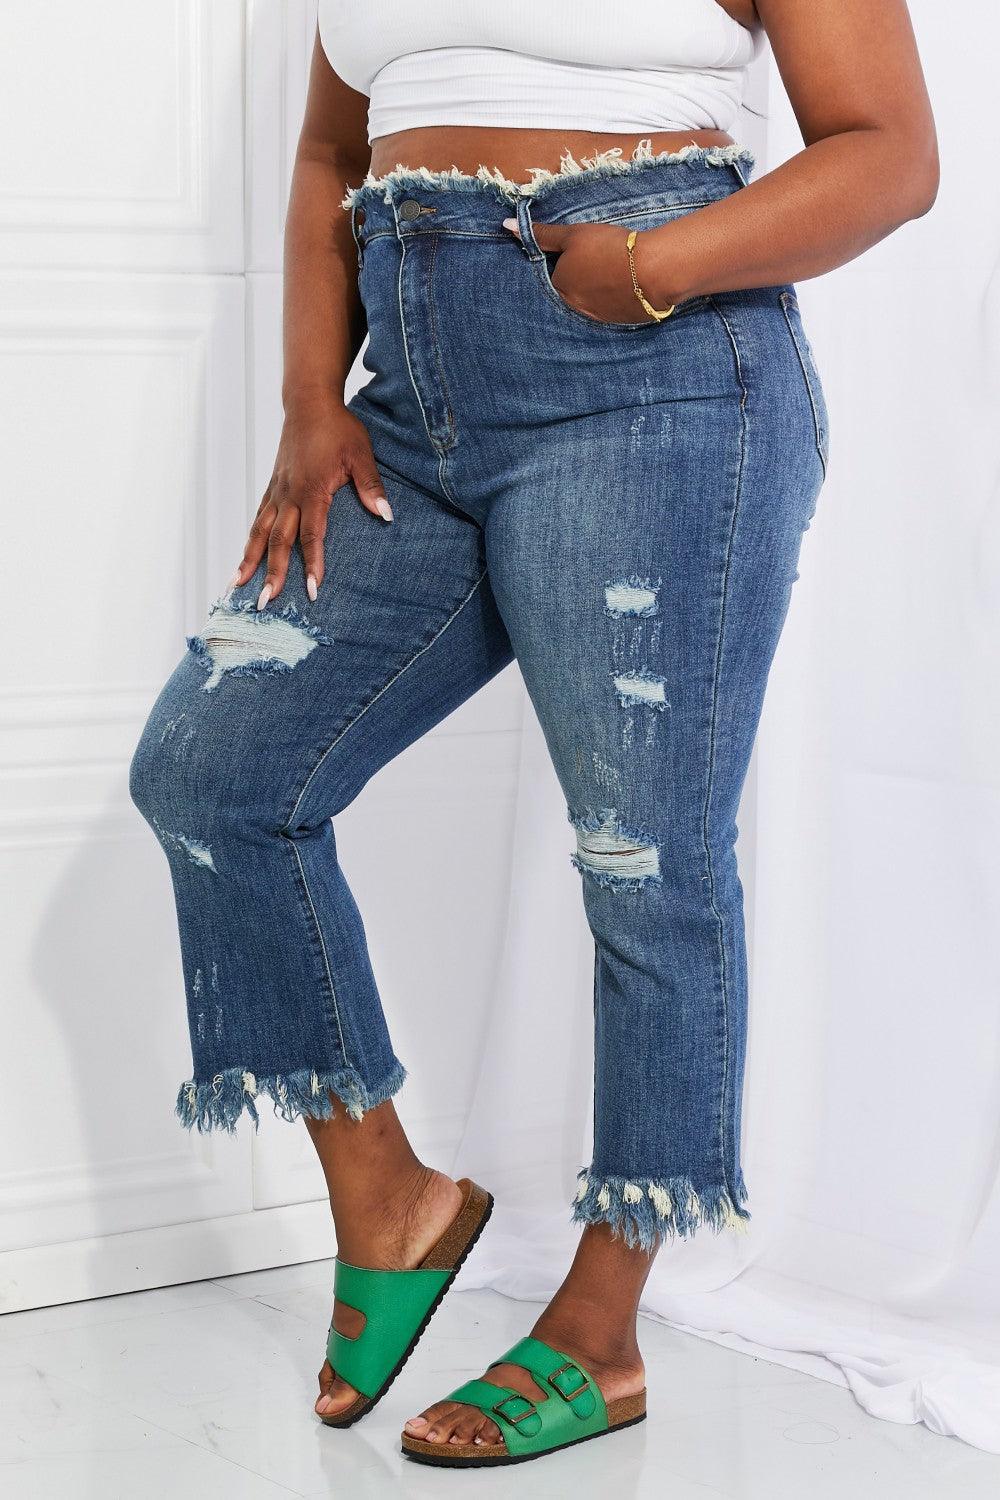 Bona Fide Fashion - Full Size Undone Chic Straight Leg Jeans - Women Fashion - Bona Fide Fashion